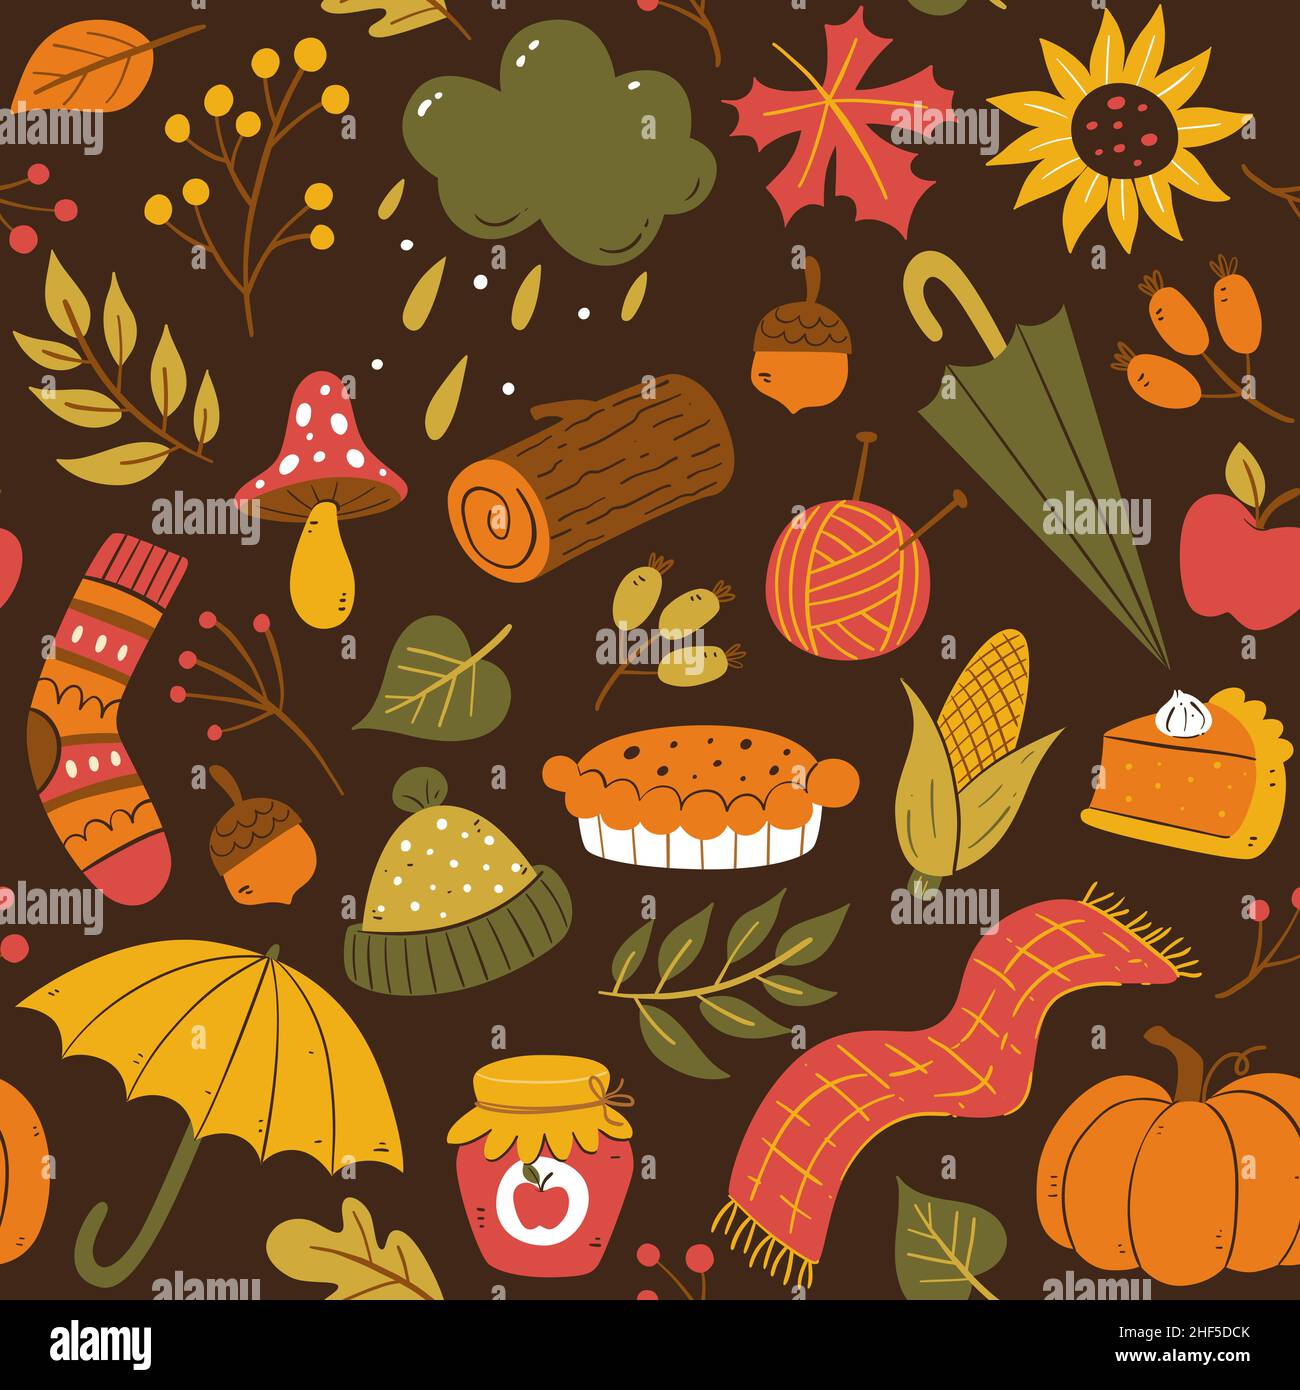 Farbenfrohes, nahtloses Herbstmuster. Handgezeichnete saisonale Elemente isoliert auf dunklem Hintergrund. Vektorgrafik. Stock Vektor